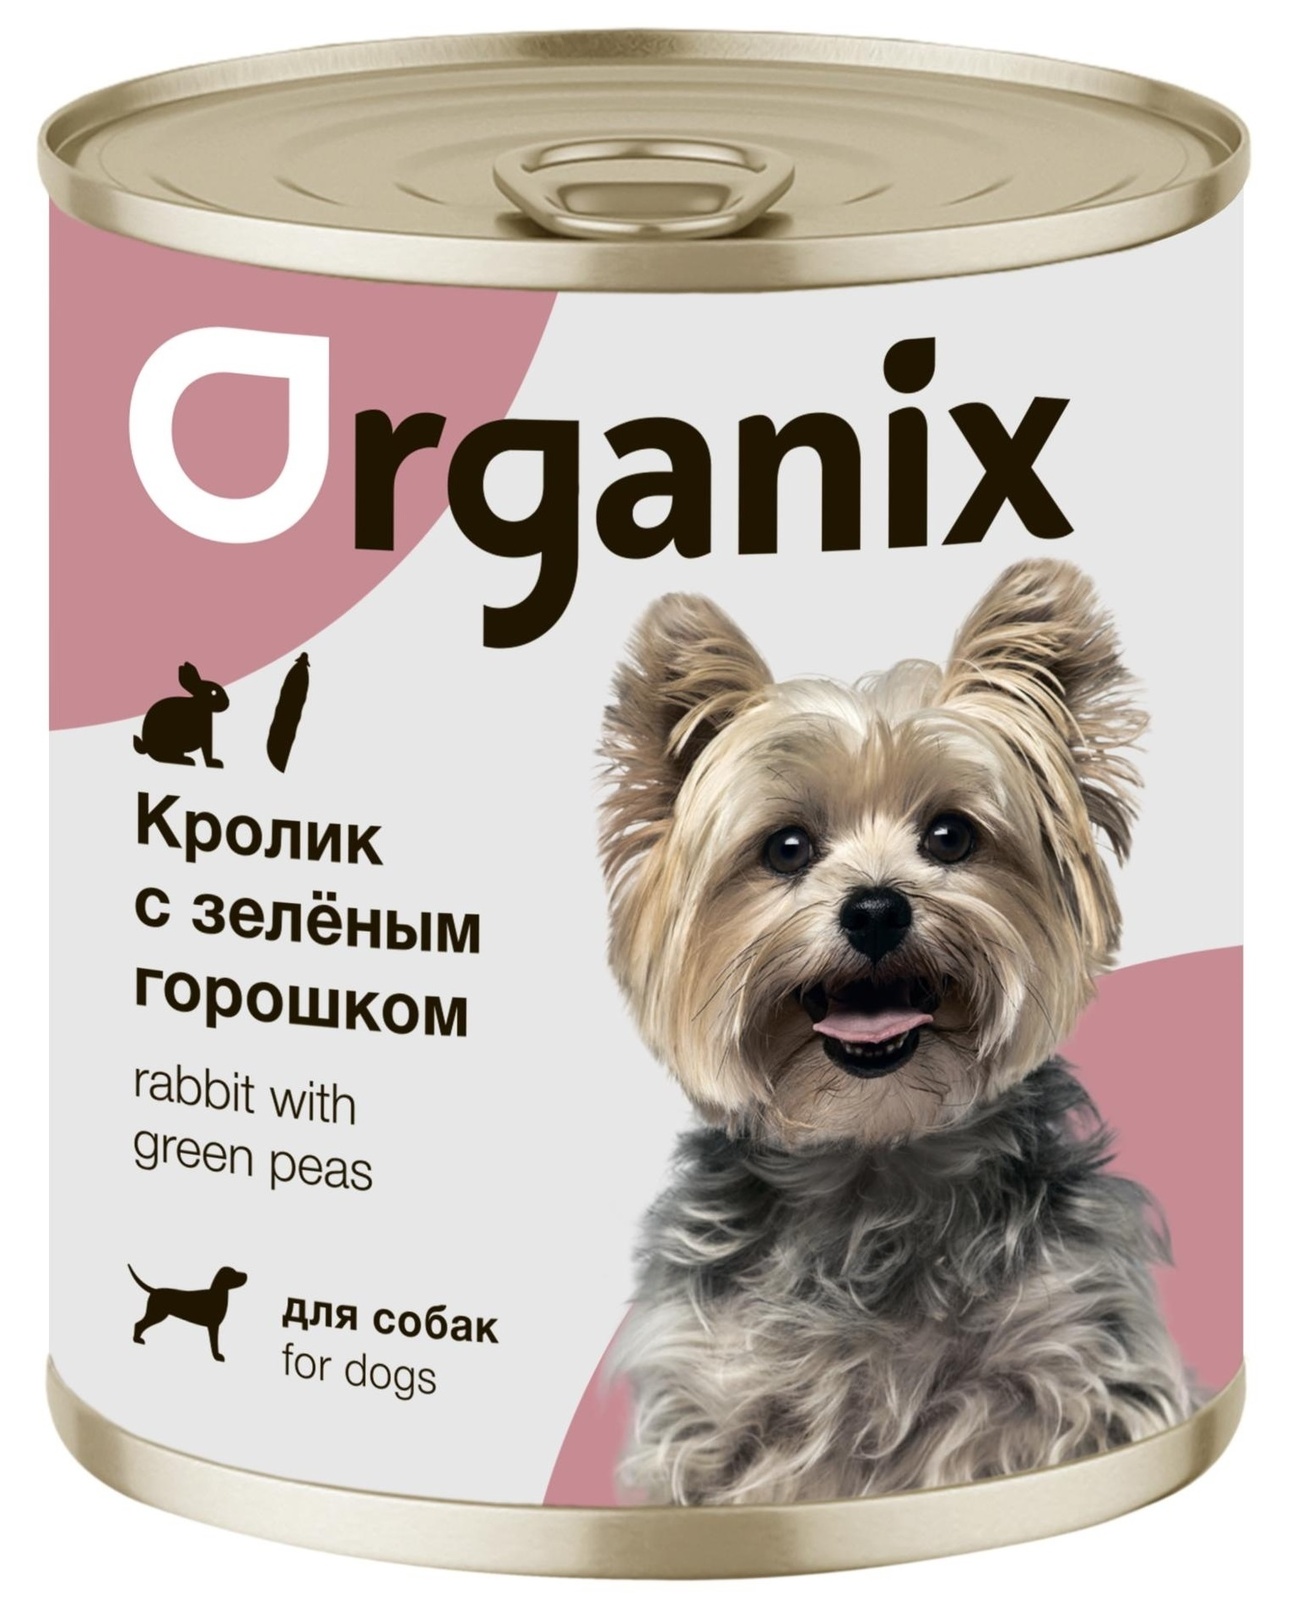 Organix консервы Organix консервы для собак Кролик с зеленым горошком (750 г) organix консервы organix консервы для собак сочная утка с печенью и тыквой 750 г